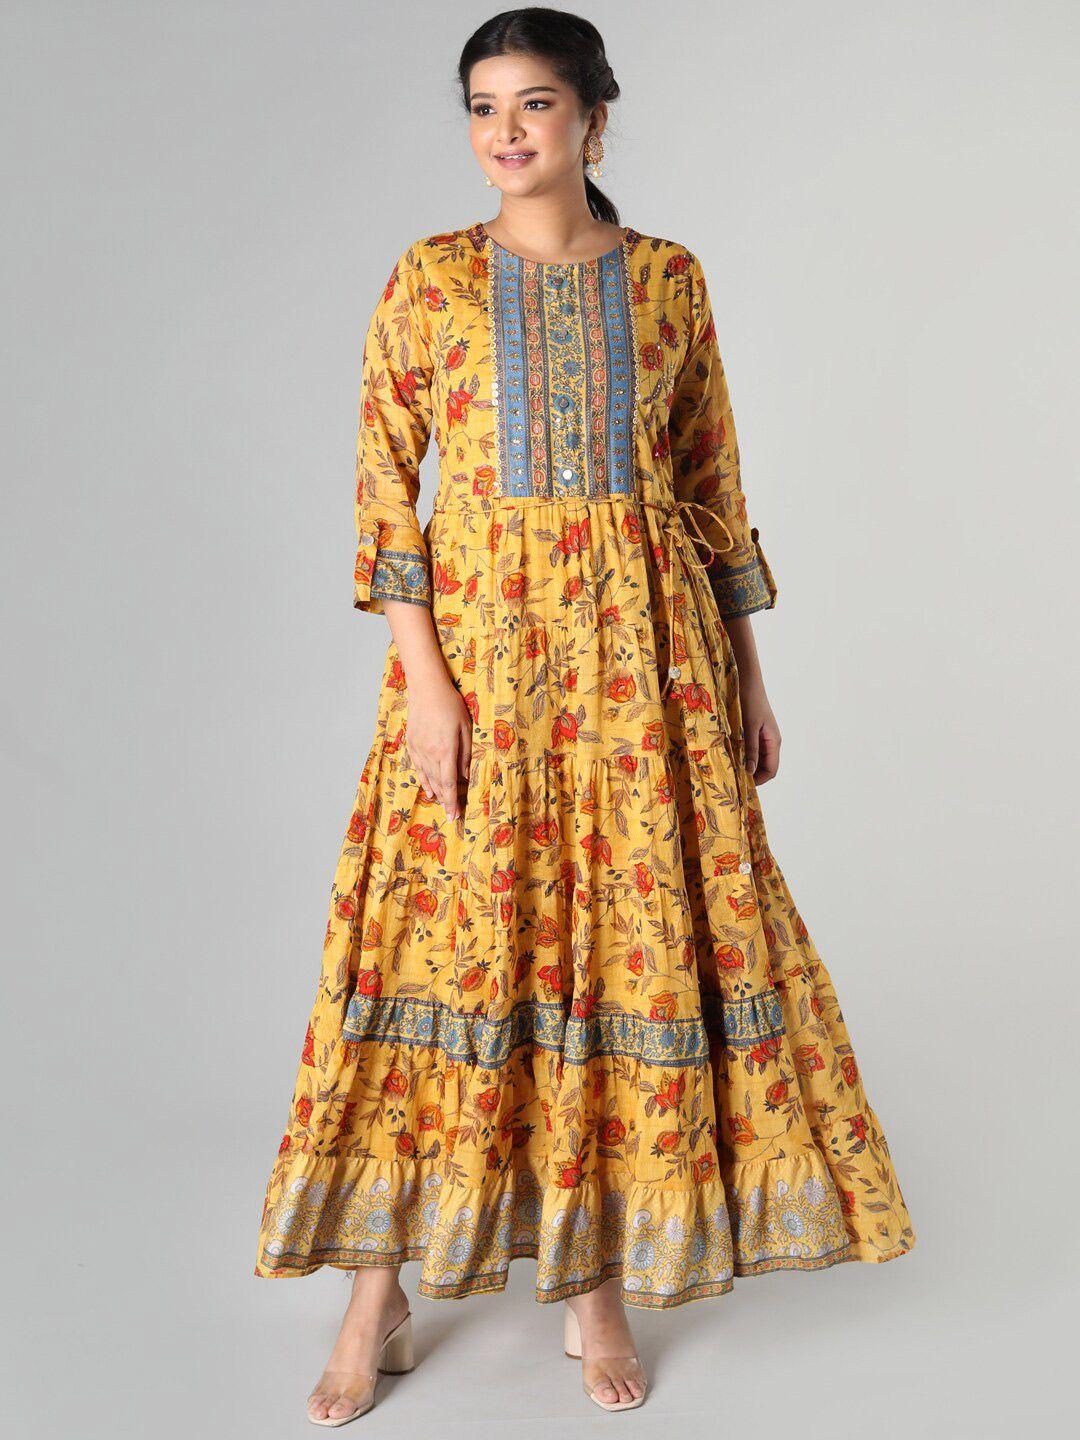 taruni mustard yellow & red ethnic motifs cotton ethnic maxi dress